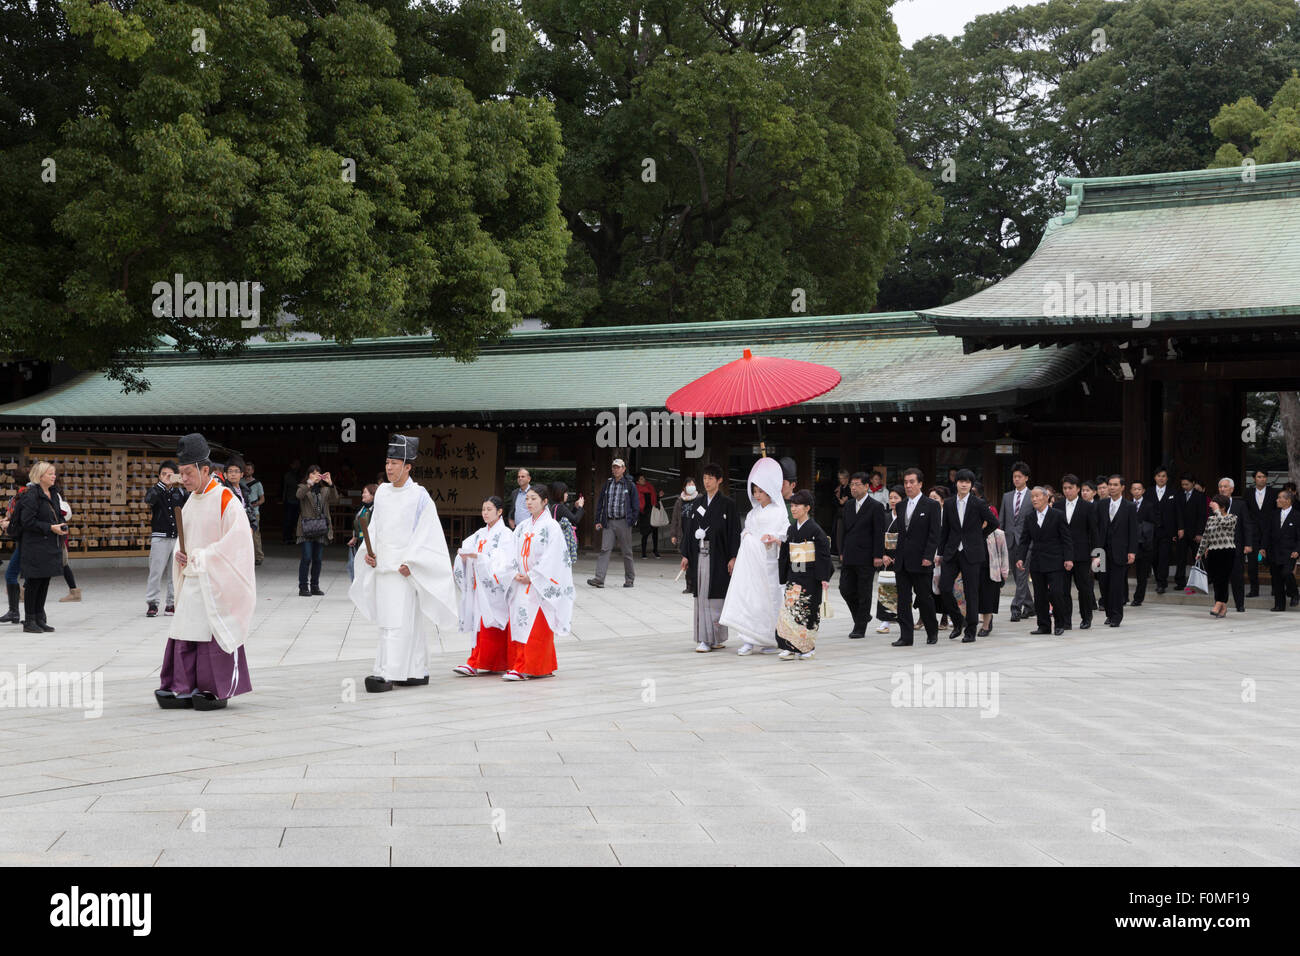 Traditionelle japanische Shinto-Hochzeits-Zeremonie, Meiji-Jingu Schrein, Shibuya, Tokyo, Japan, Asien Stockfoto